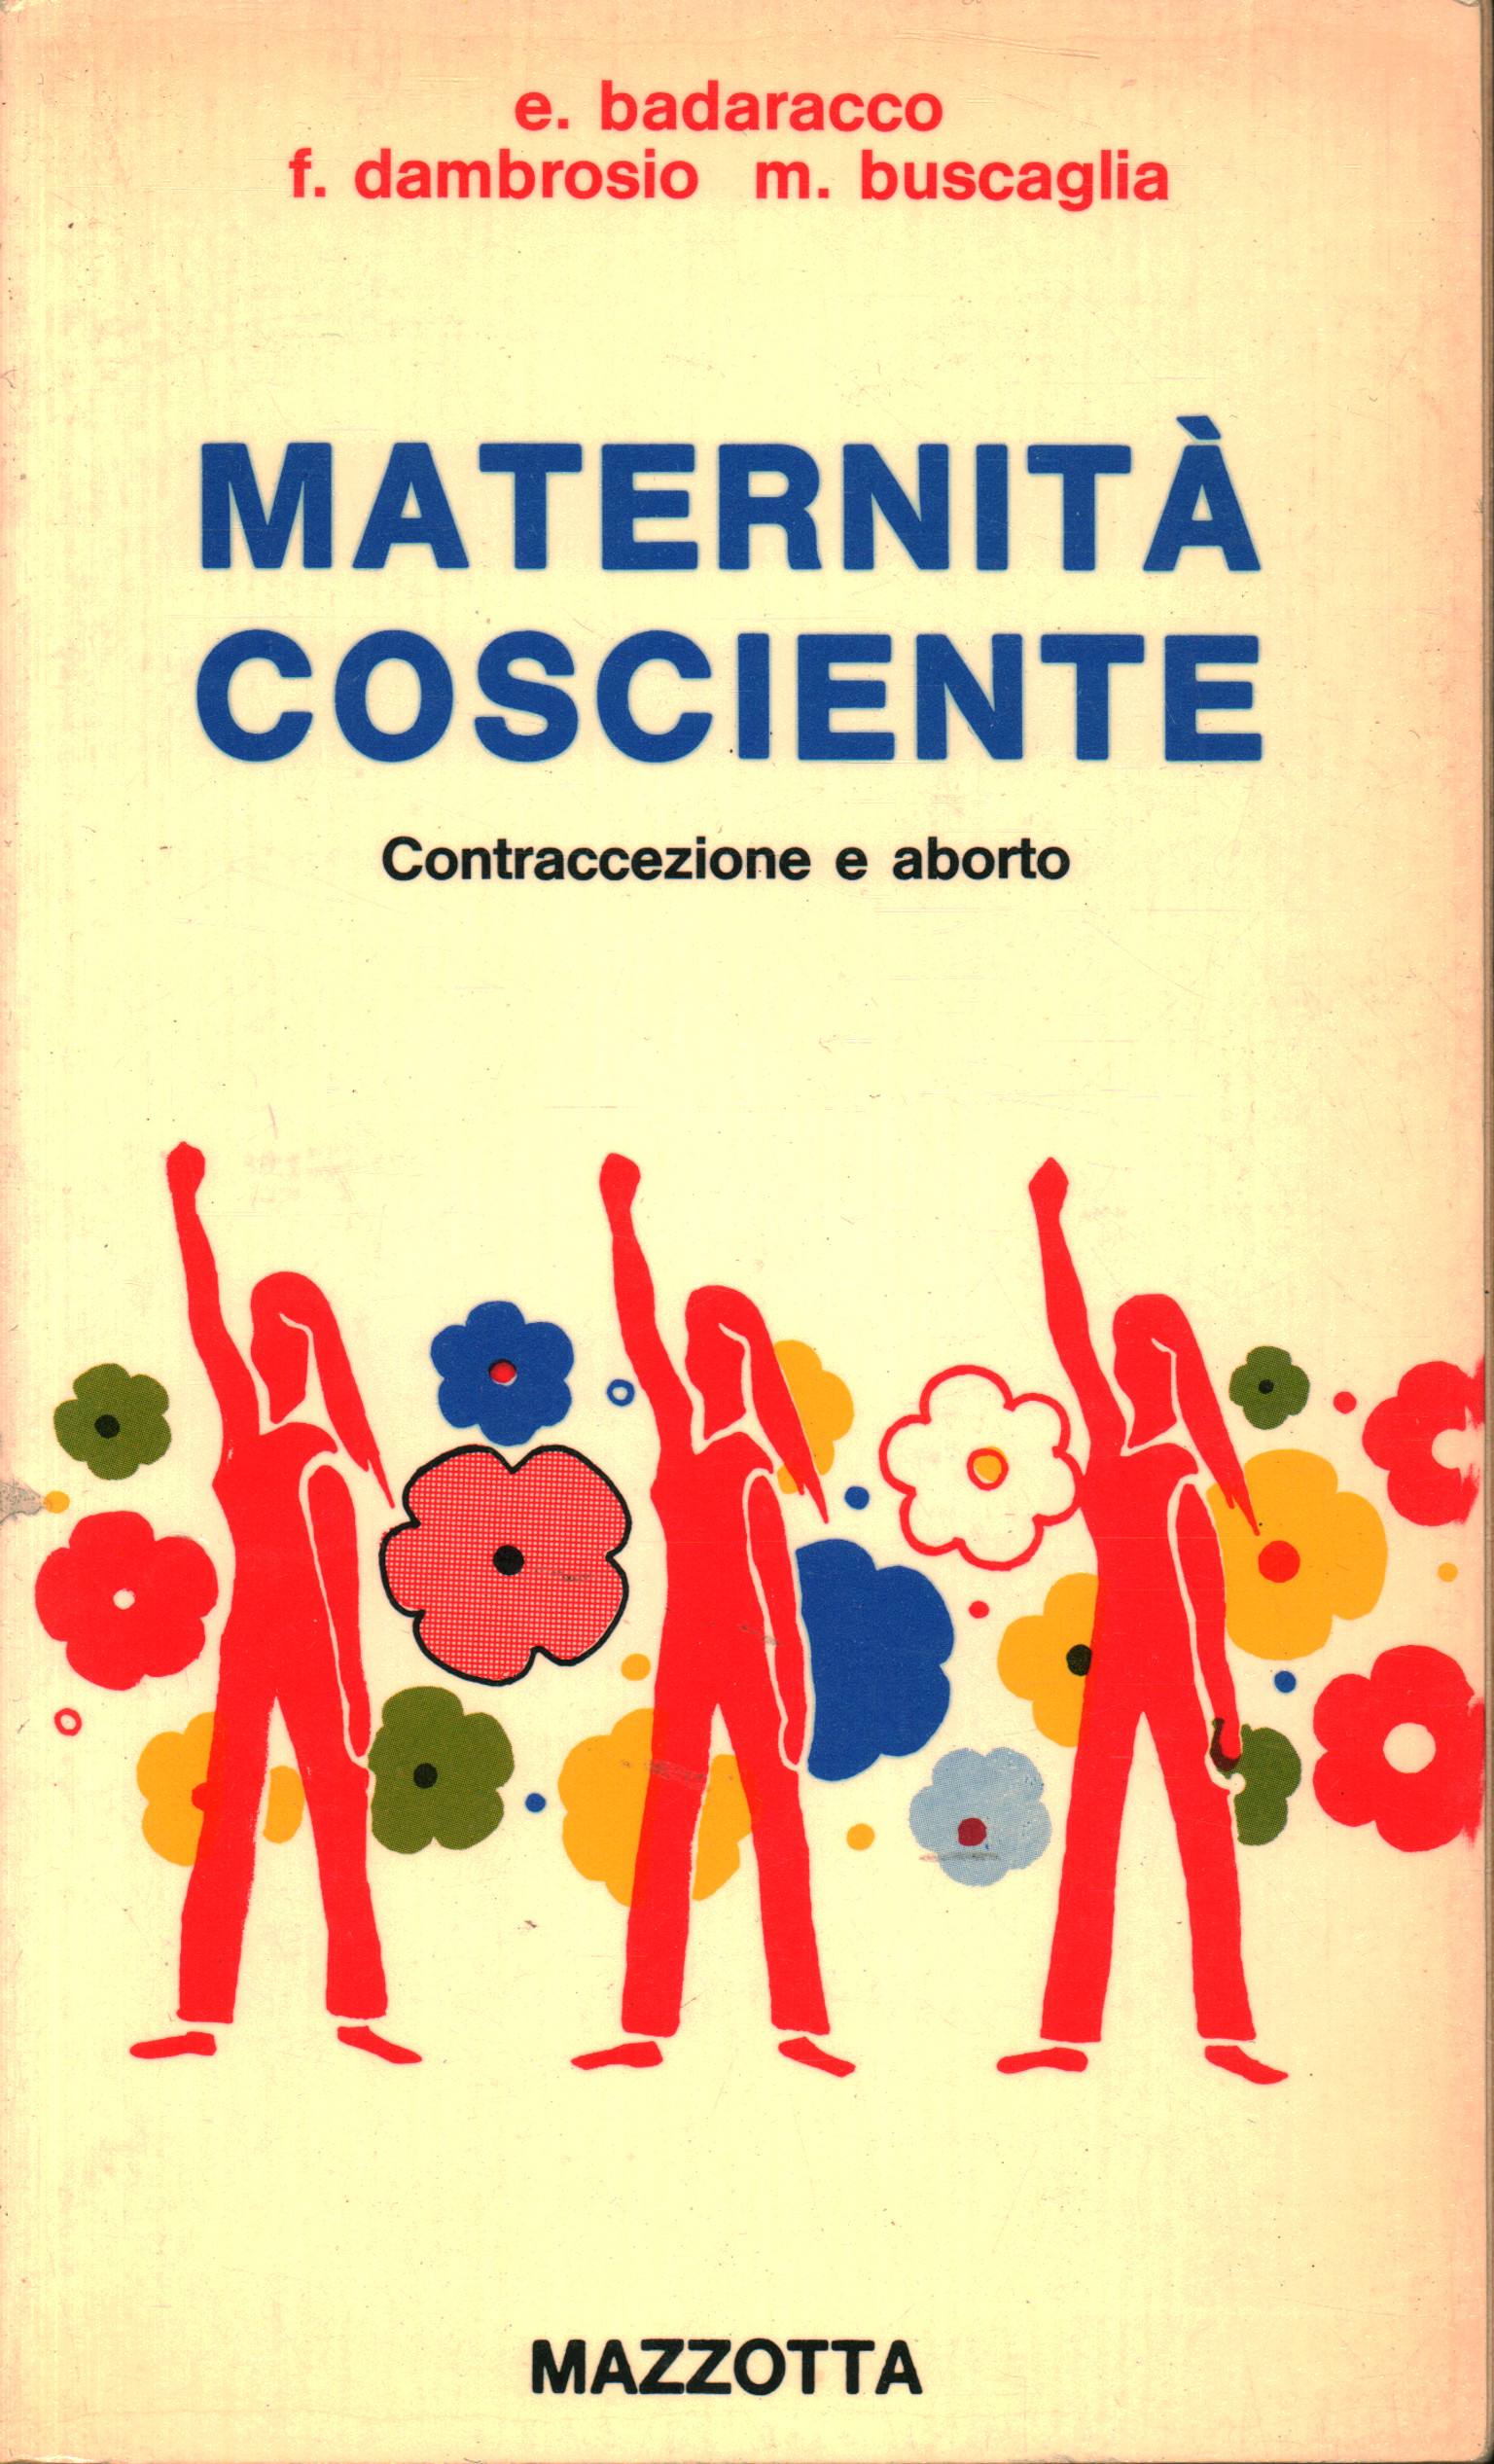 Motherhood as a conscious, Francesca Dambrosio Elvira Baldracco and Mauro Buscaglia